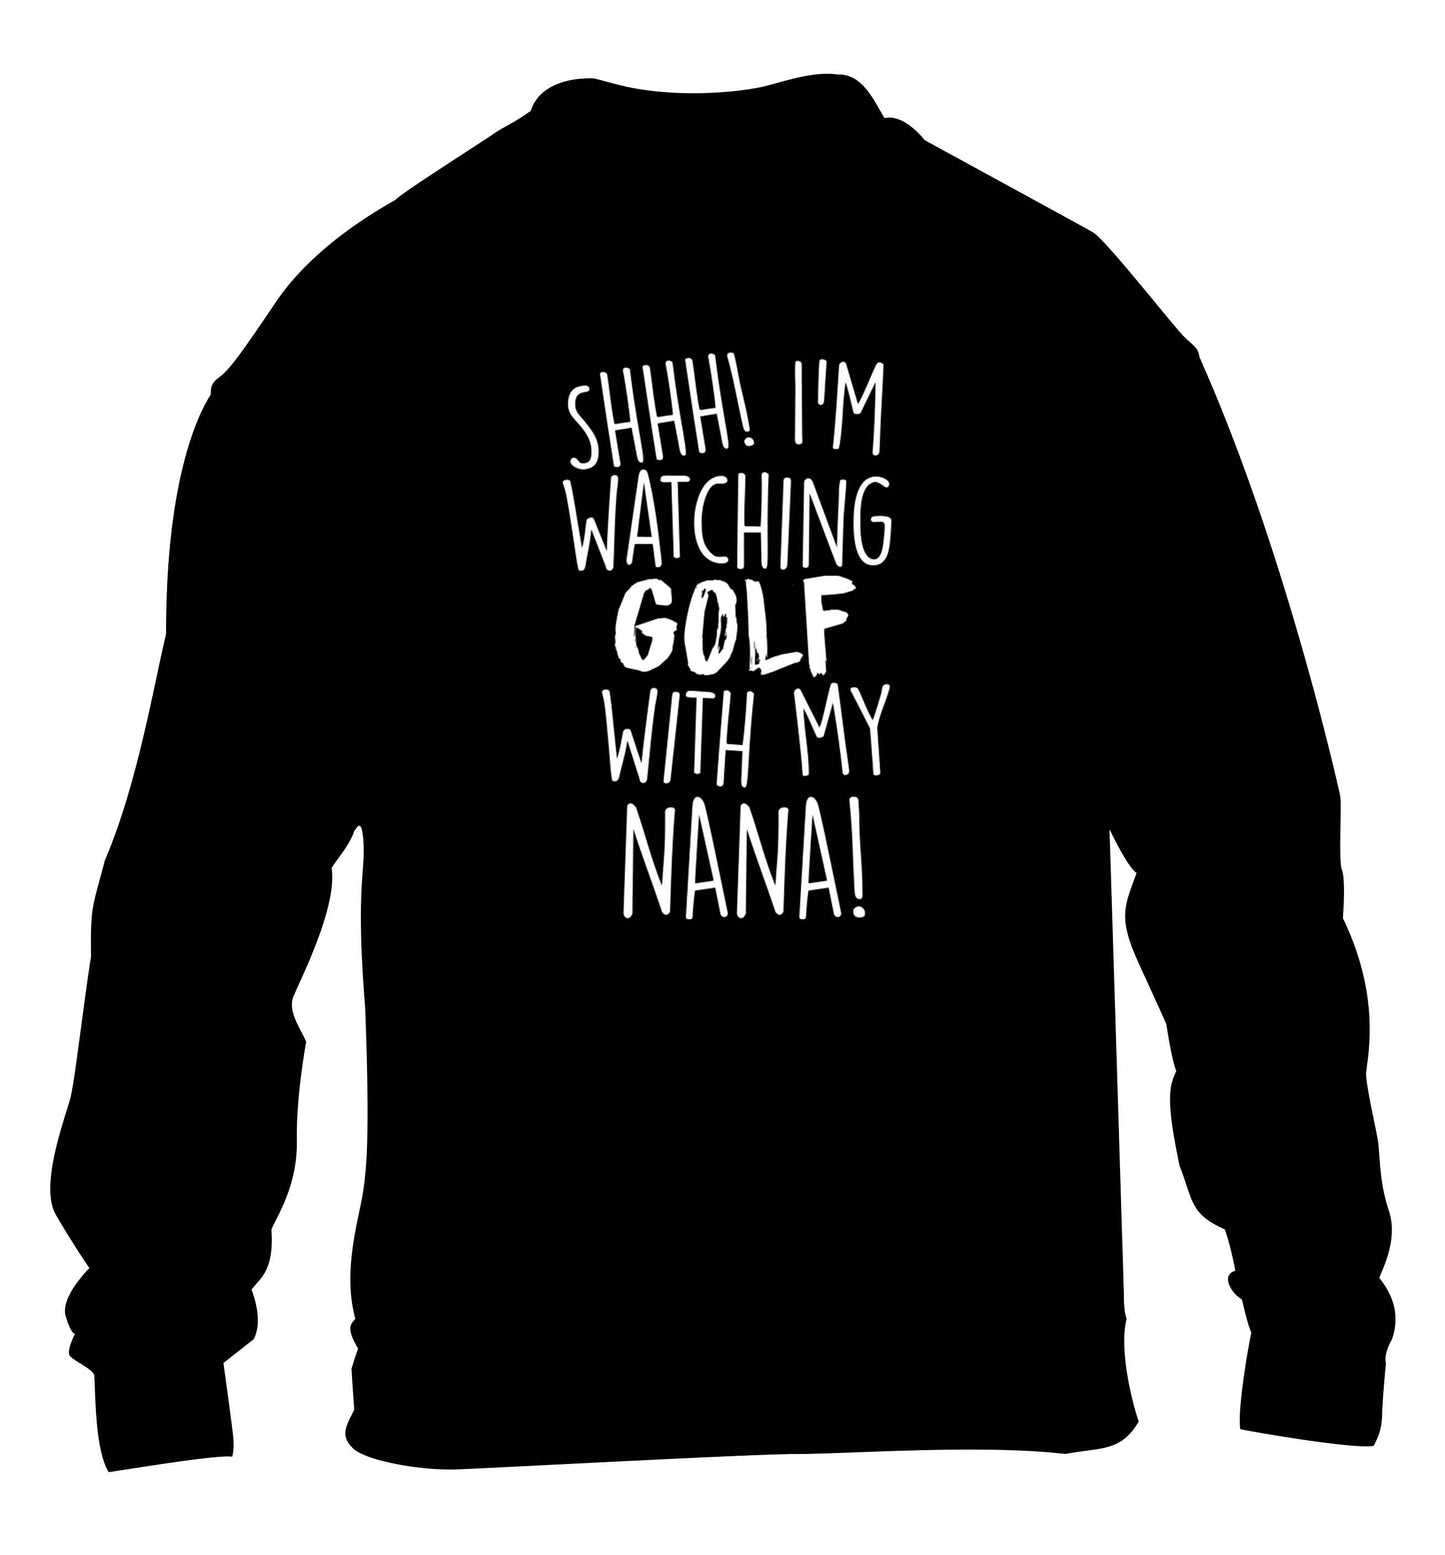 Shh I'm watching golf with my nana children's black sweater 12-13 Years